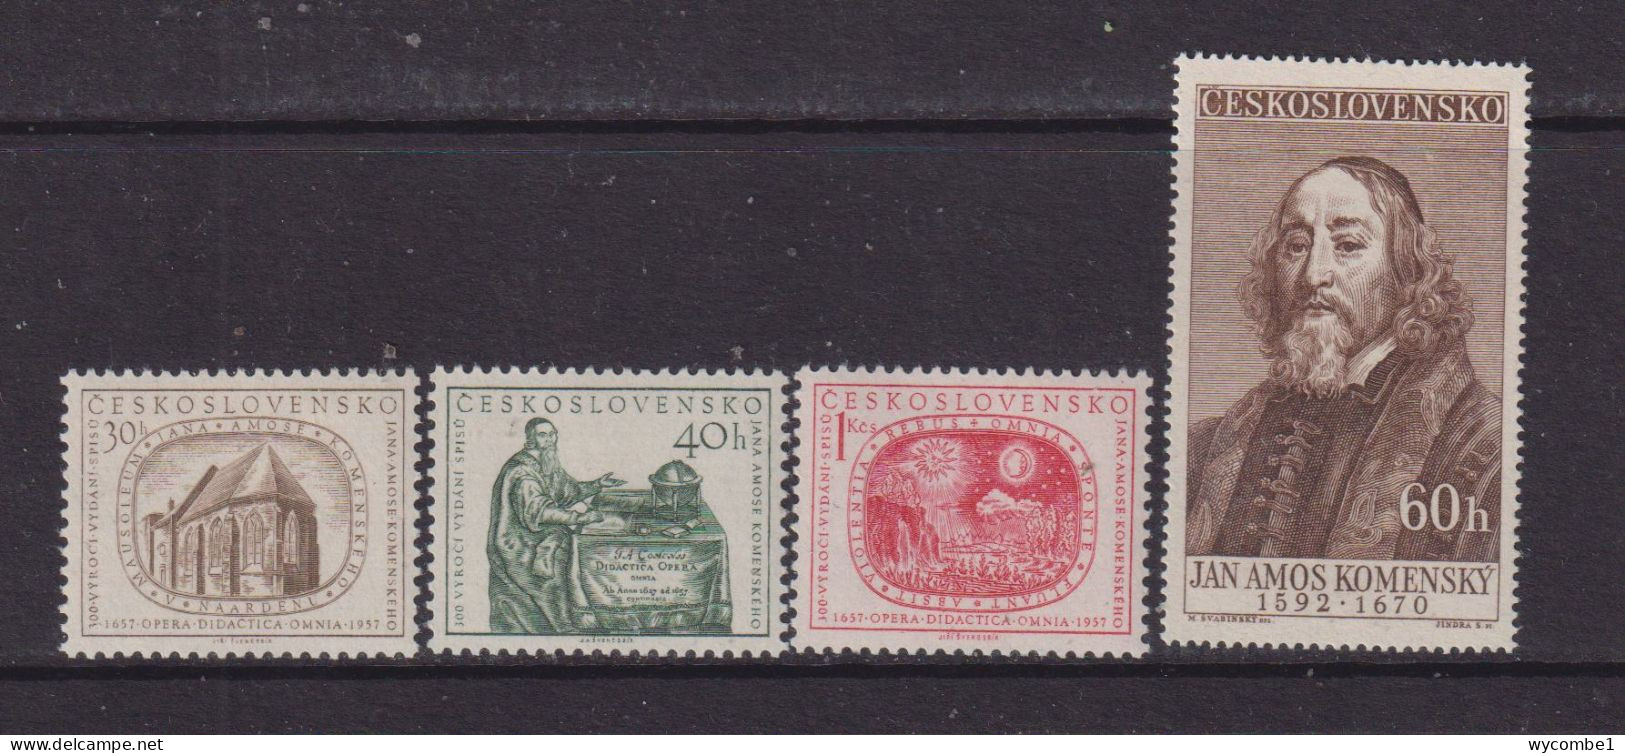 CZECHOSLOVAKIA  - 1957  Komensky Set  Never Hinged Mint - Unused Stamps